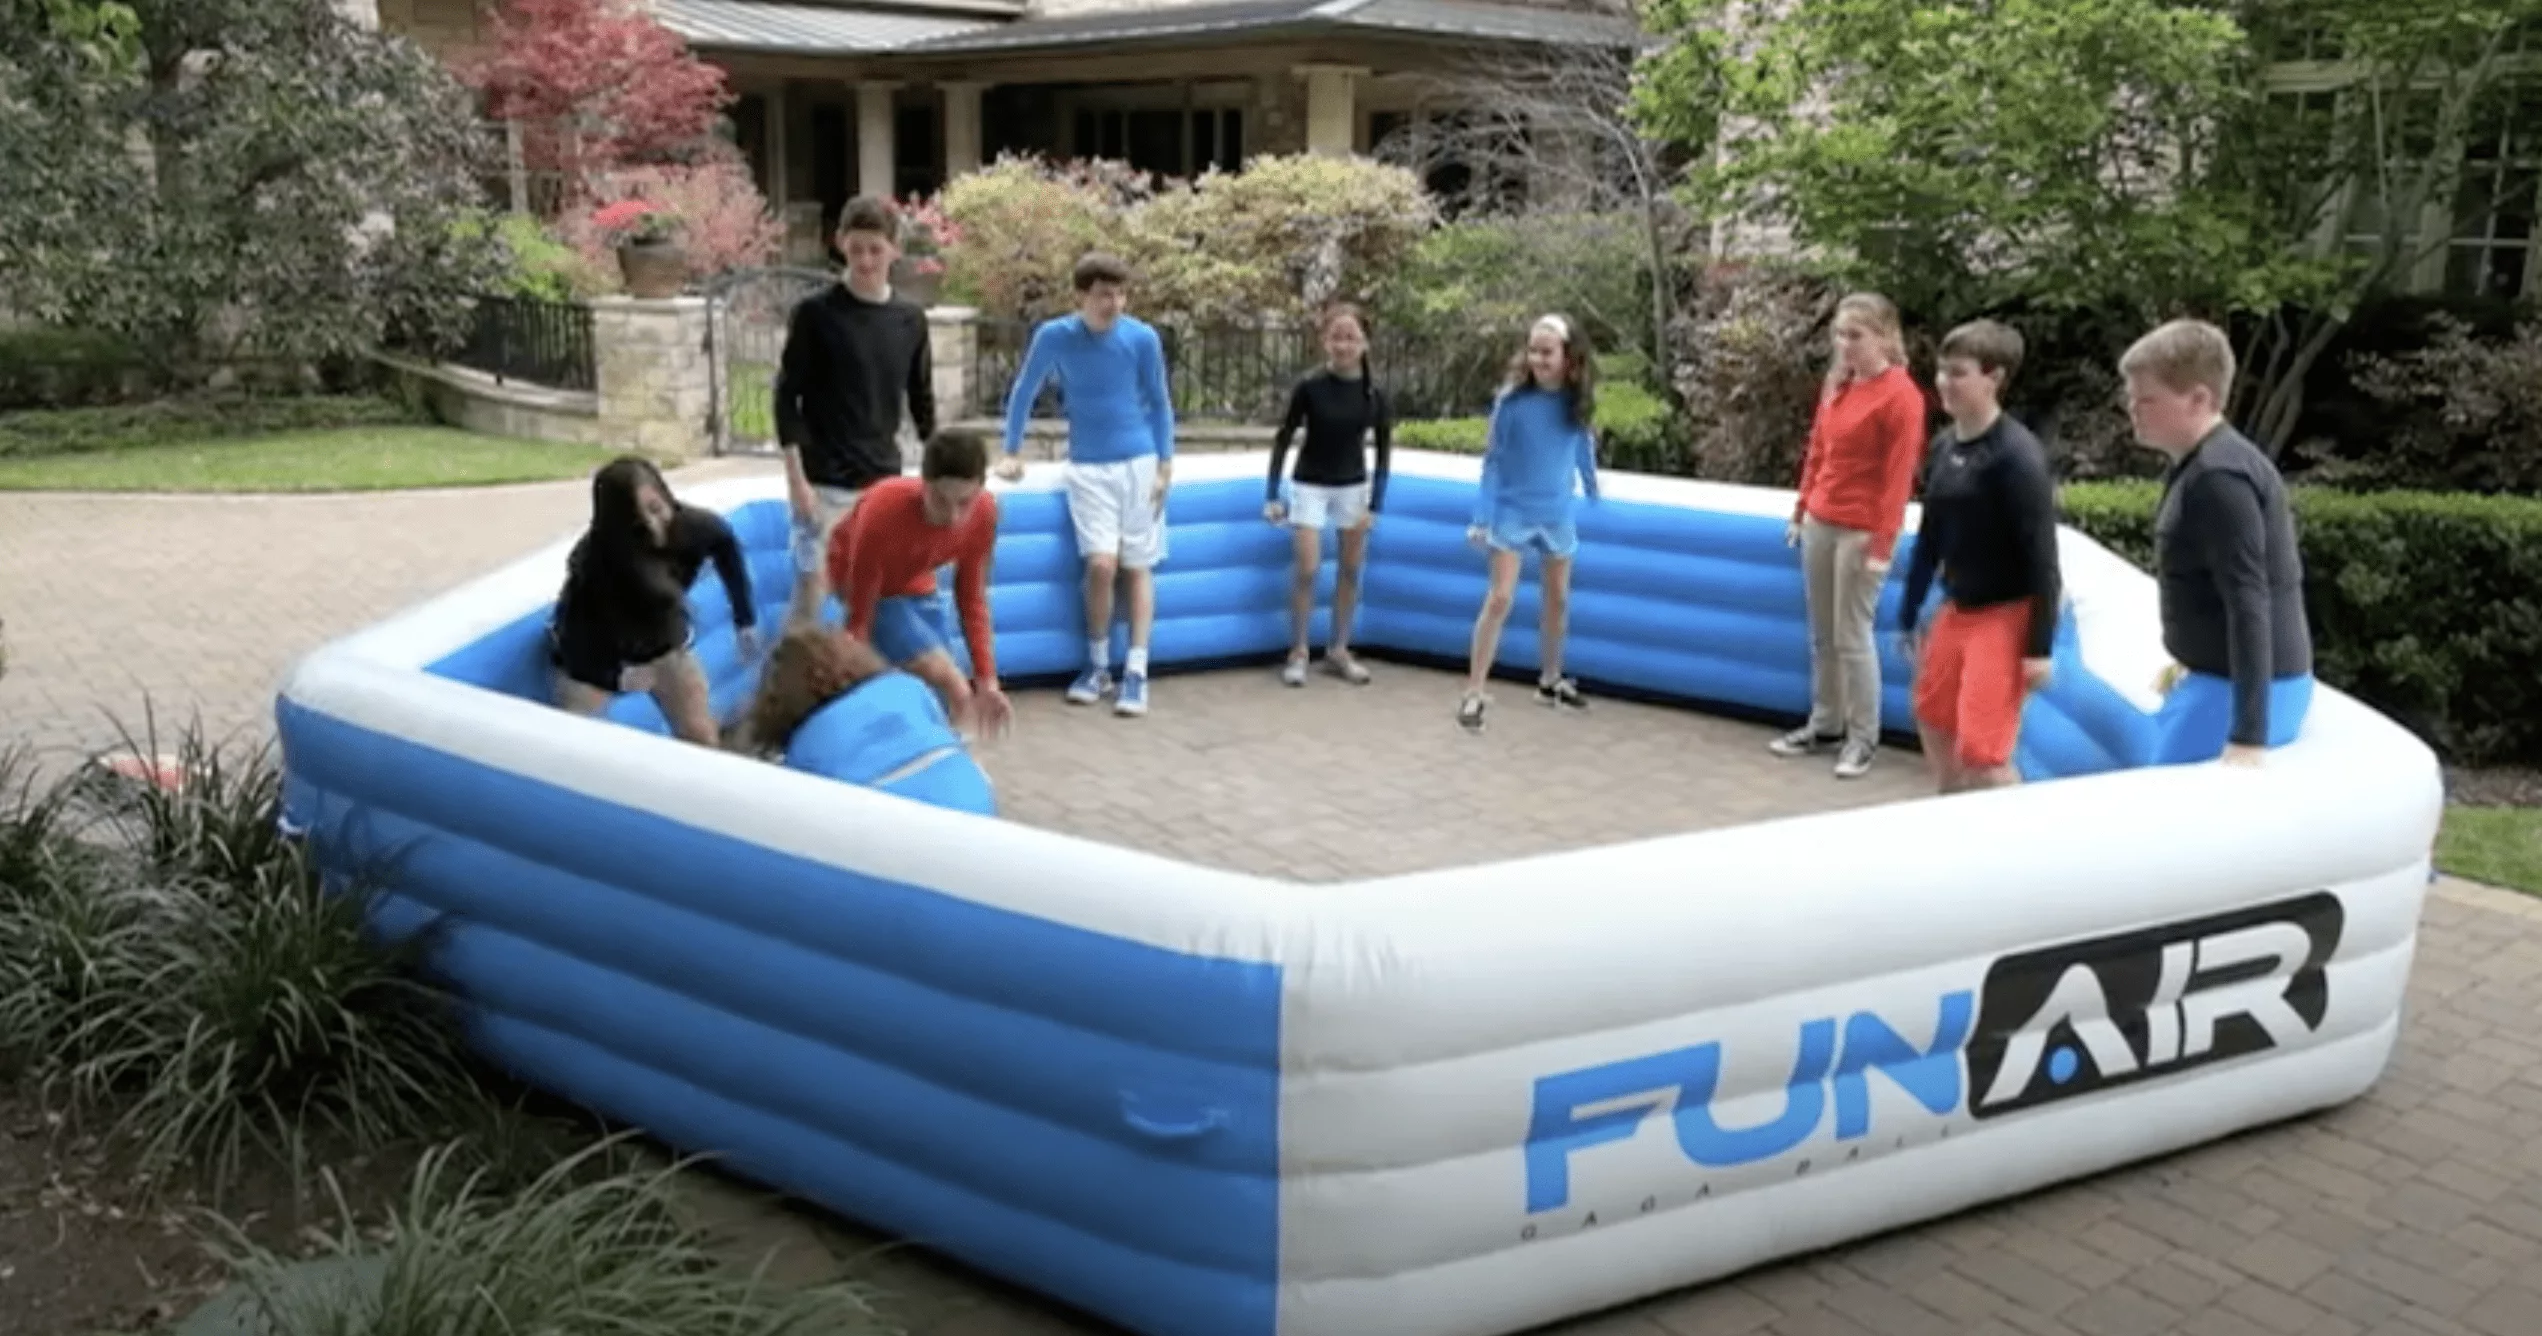 Portable and Inflatable FunAir Gaga Ball Pit Play